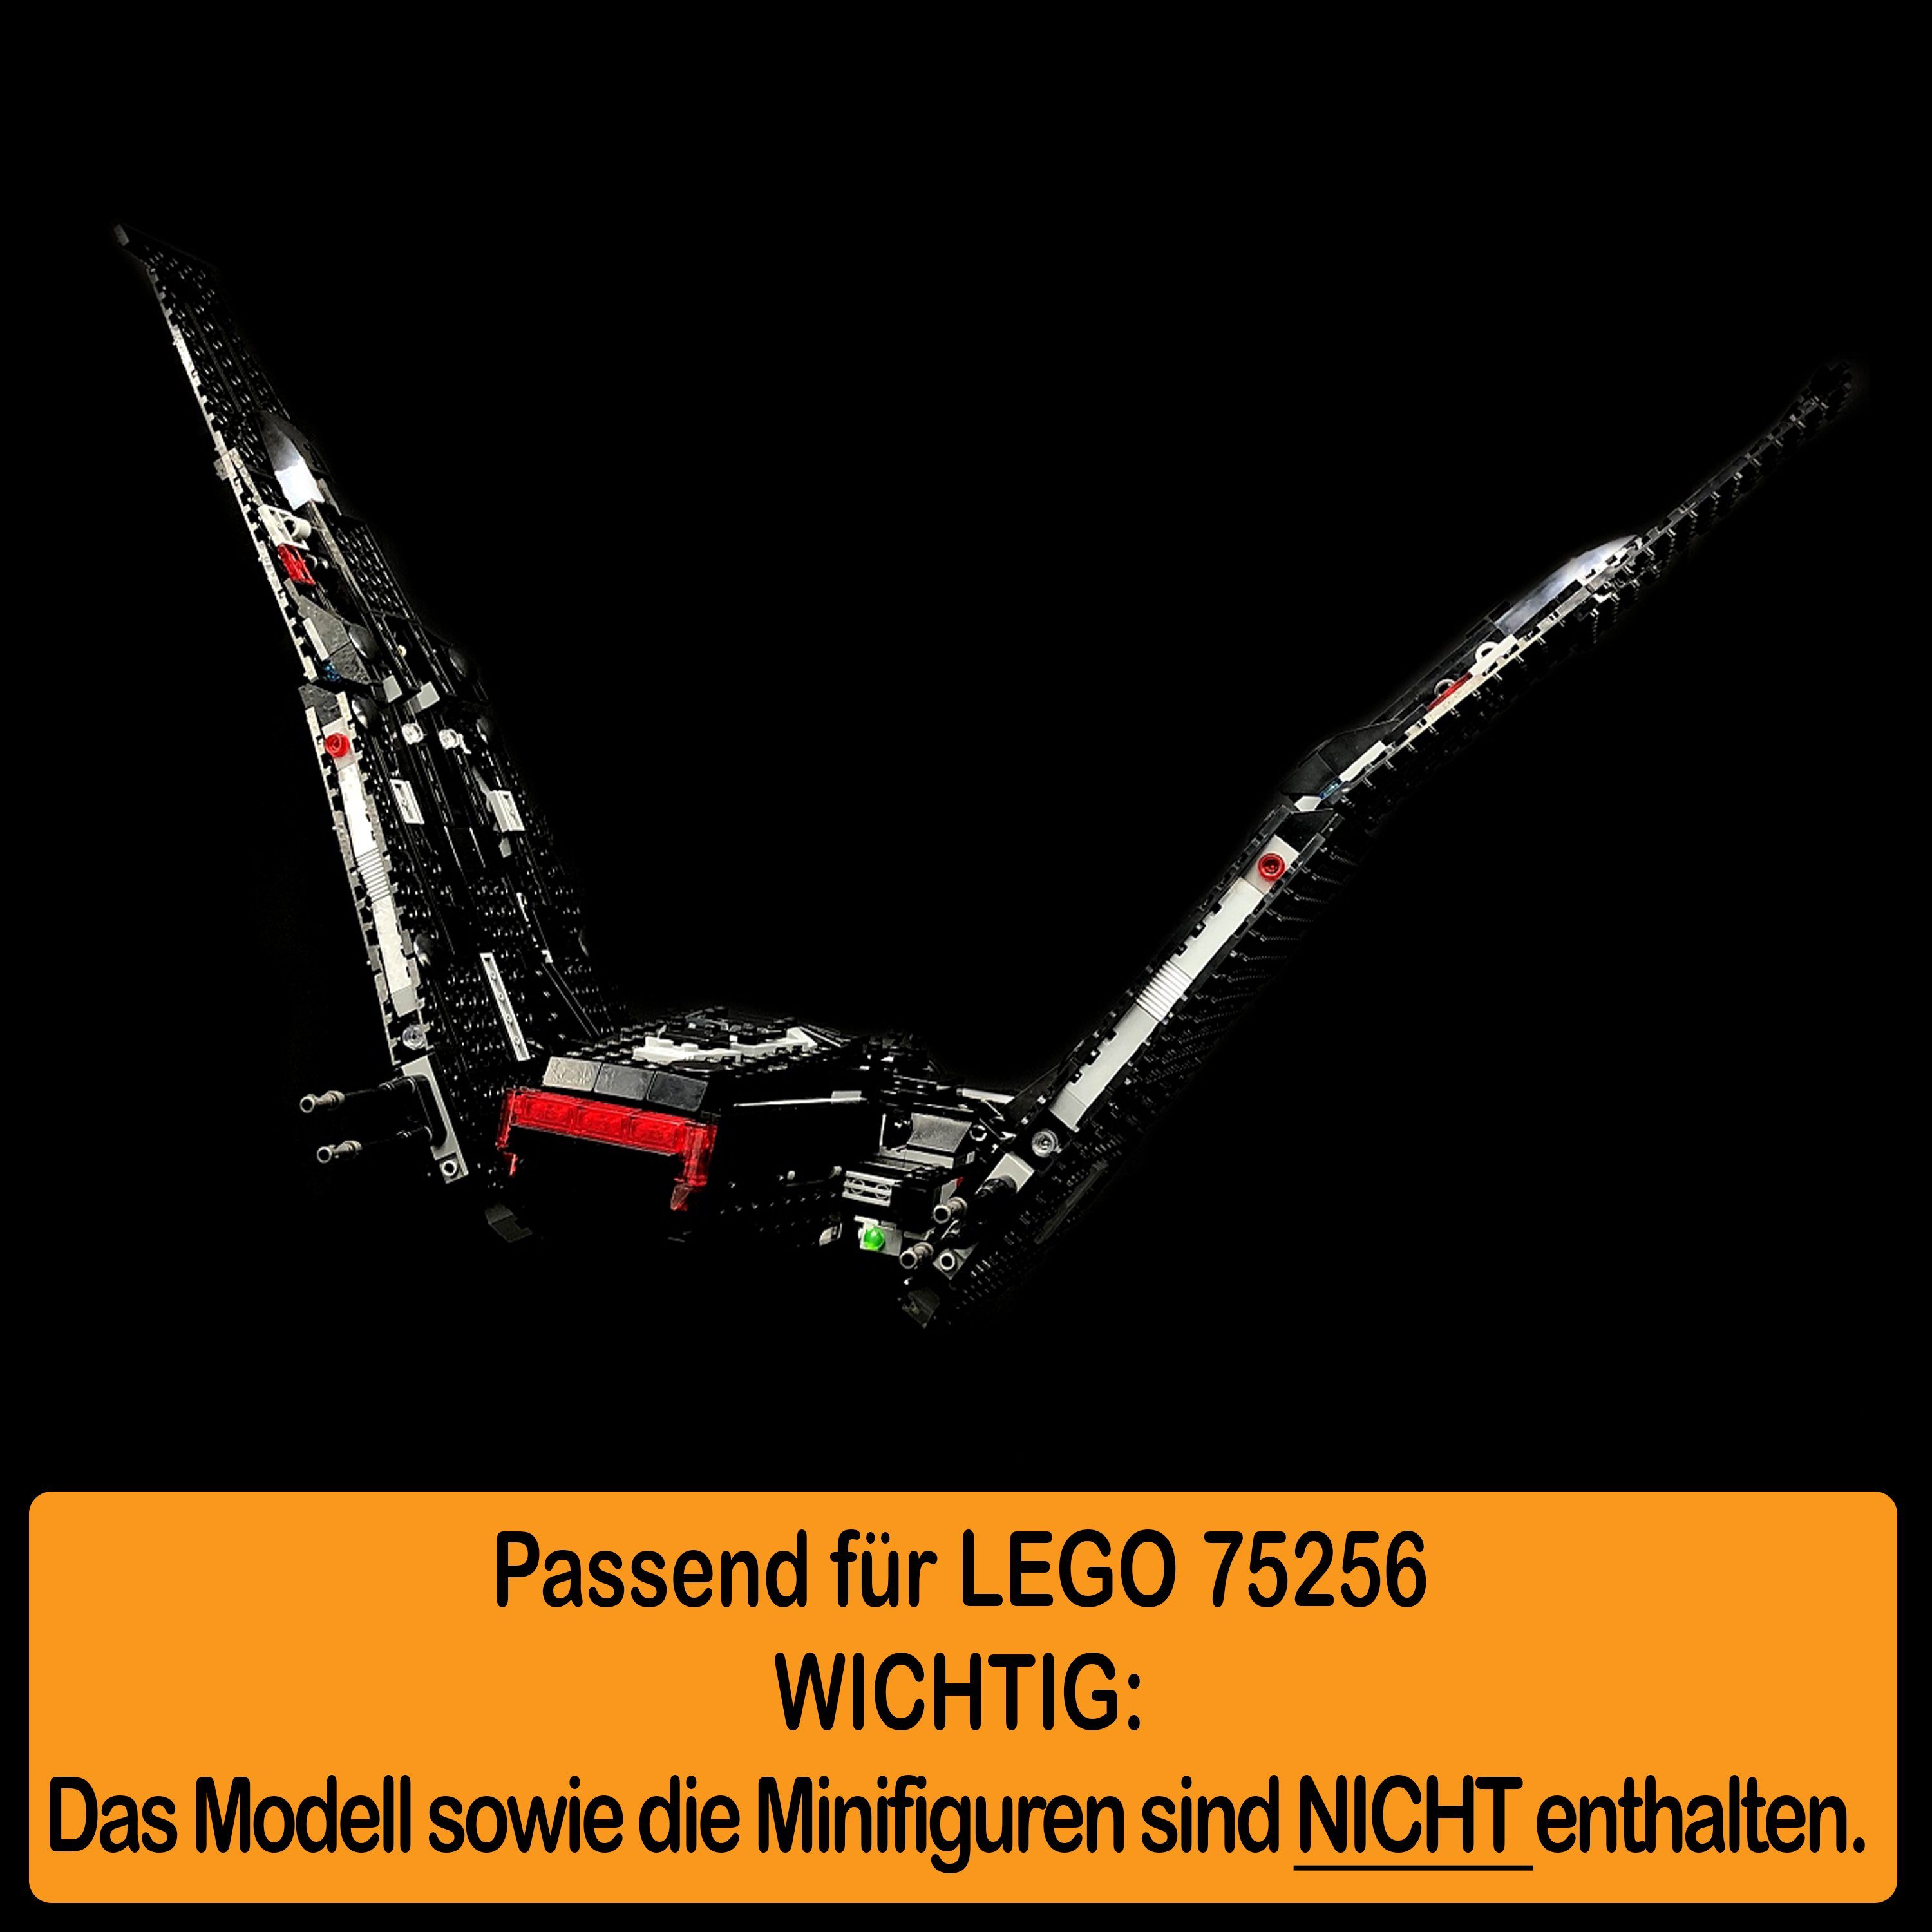 einstellbar, zusammenbauen), Shuttle Acryl und Winkel Stand Germany LEGO 75256 Made Positionen AREA17 Kylo Ren´s selbst 100% (verschiedene in für Display Standfuß zum